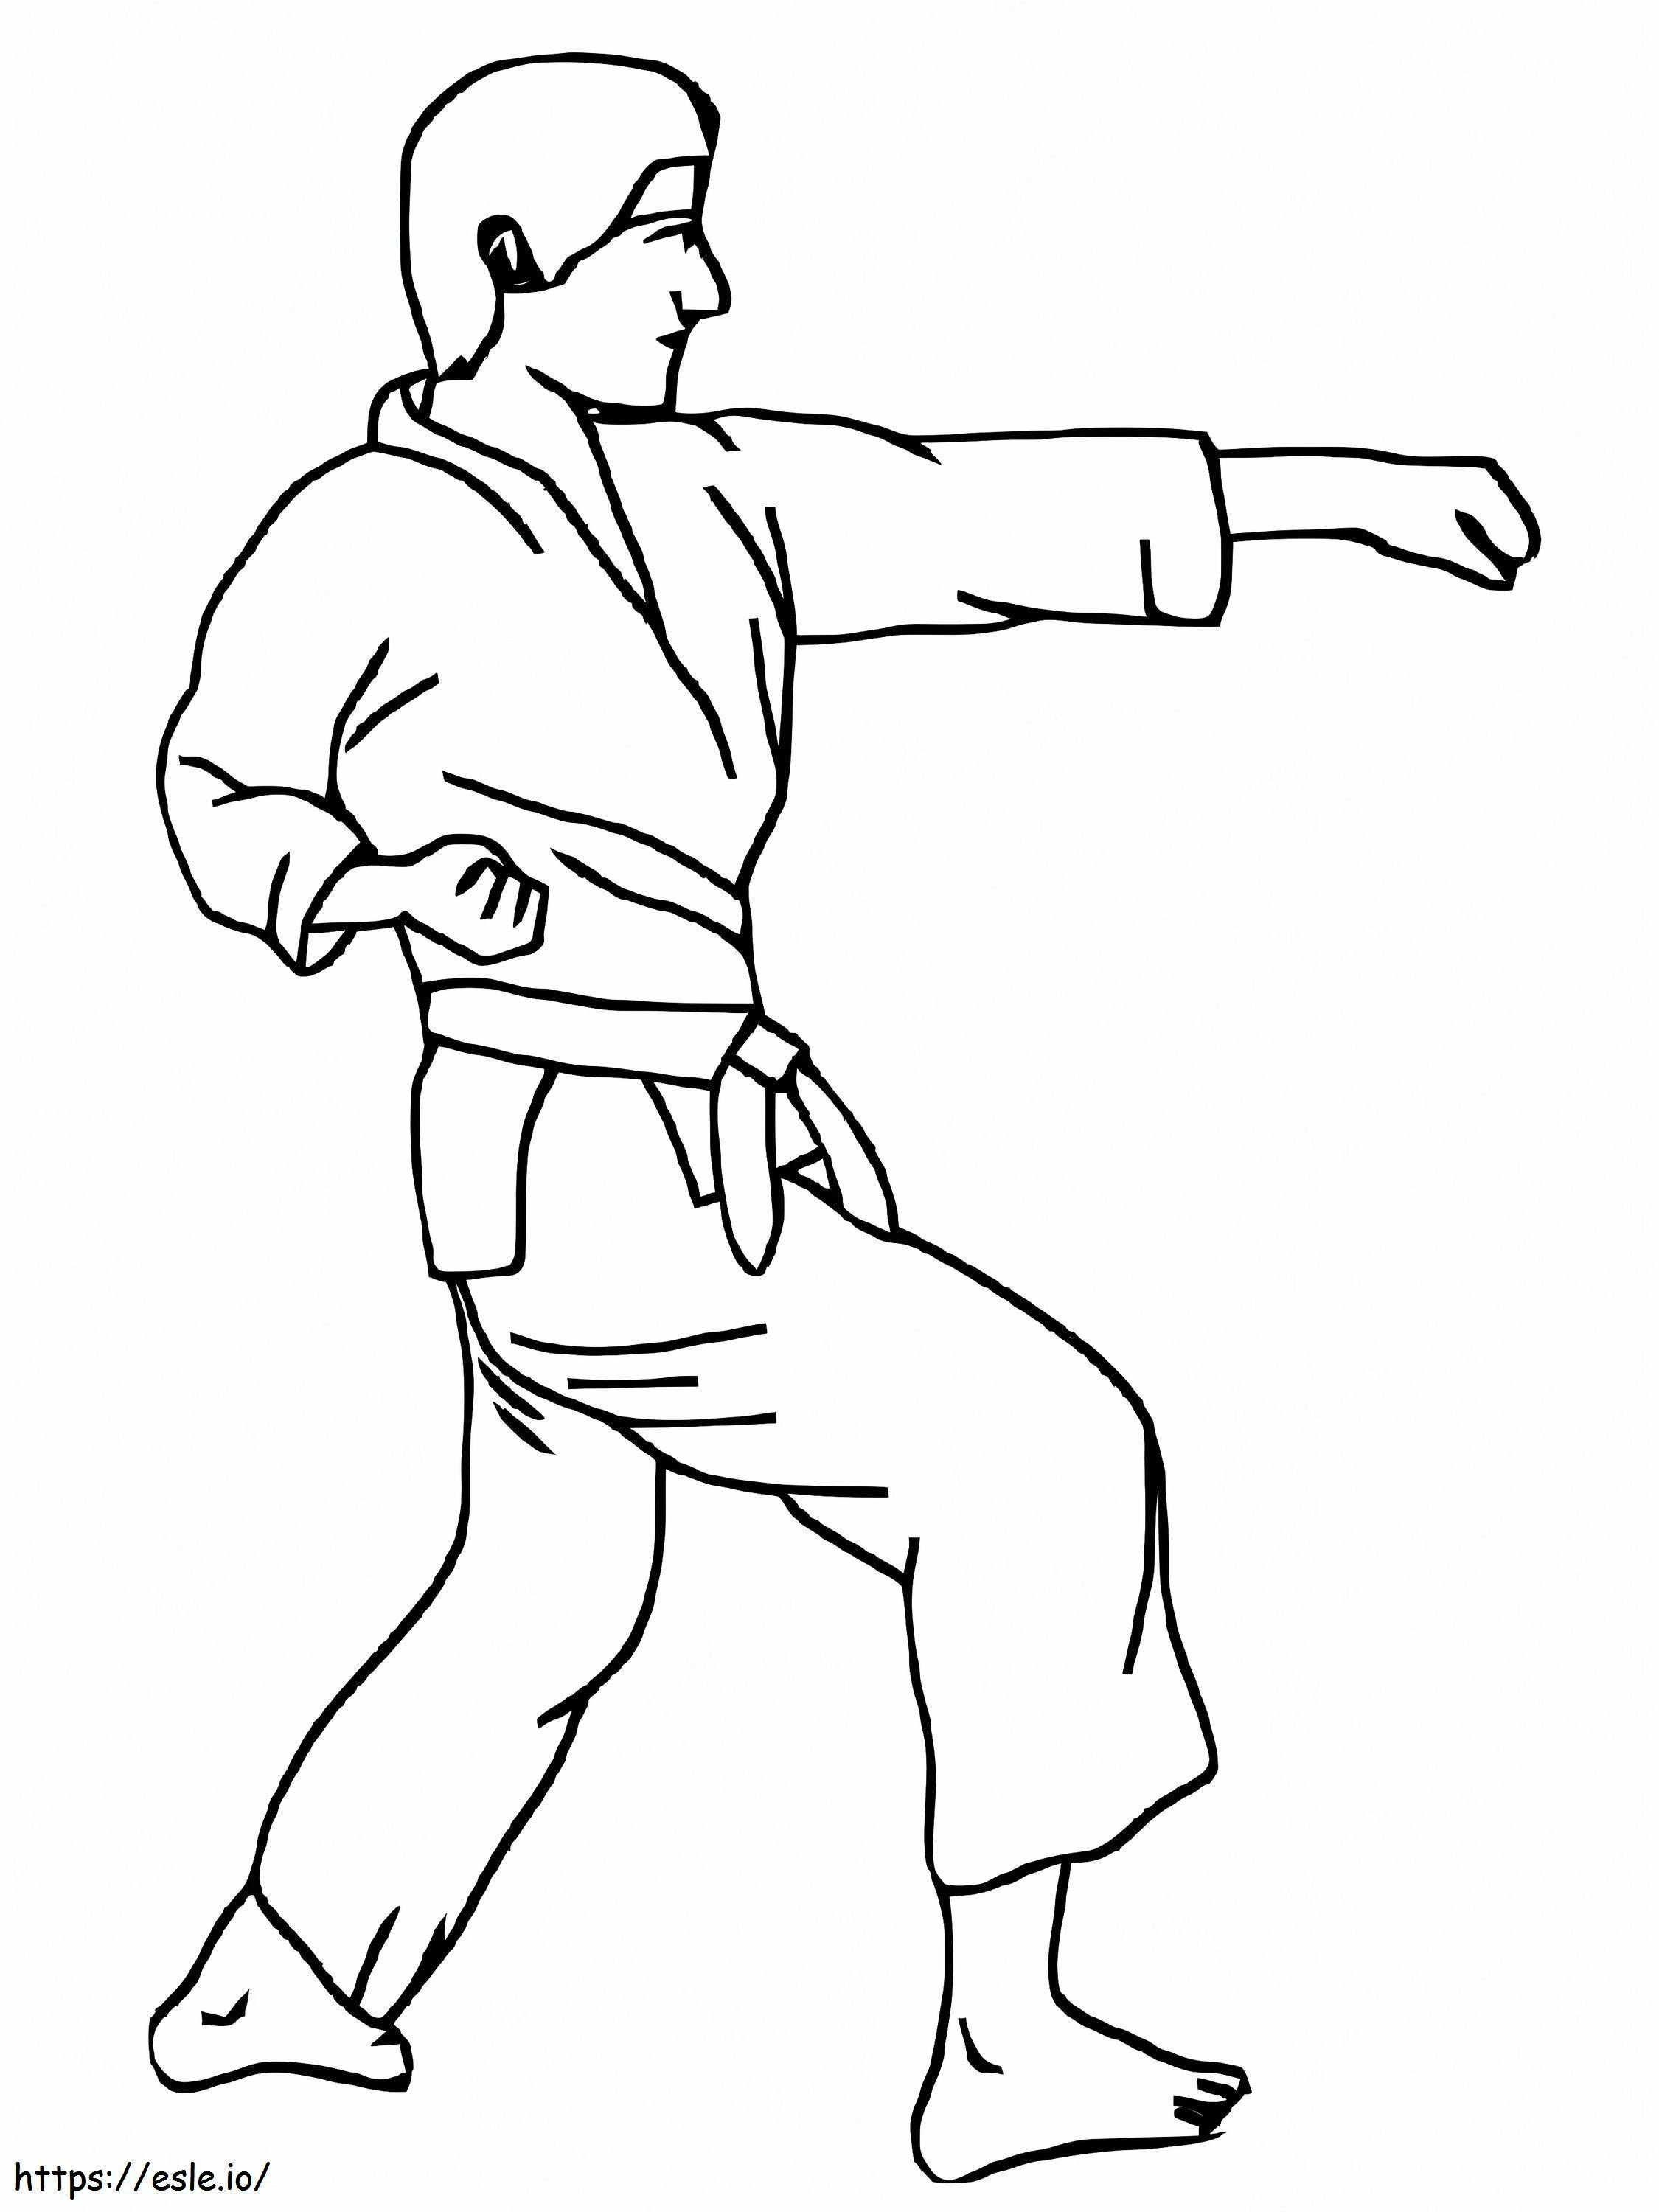 Kostenloses Karate ausmalbilder